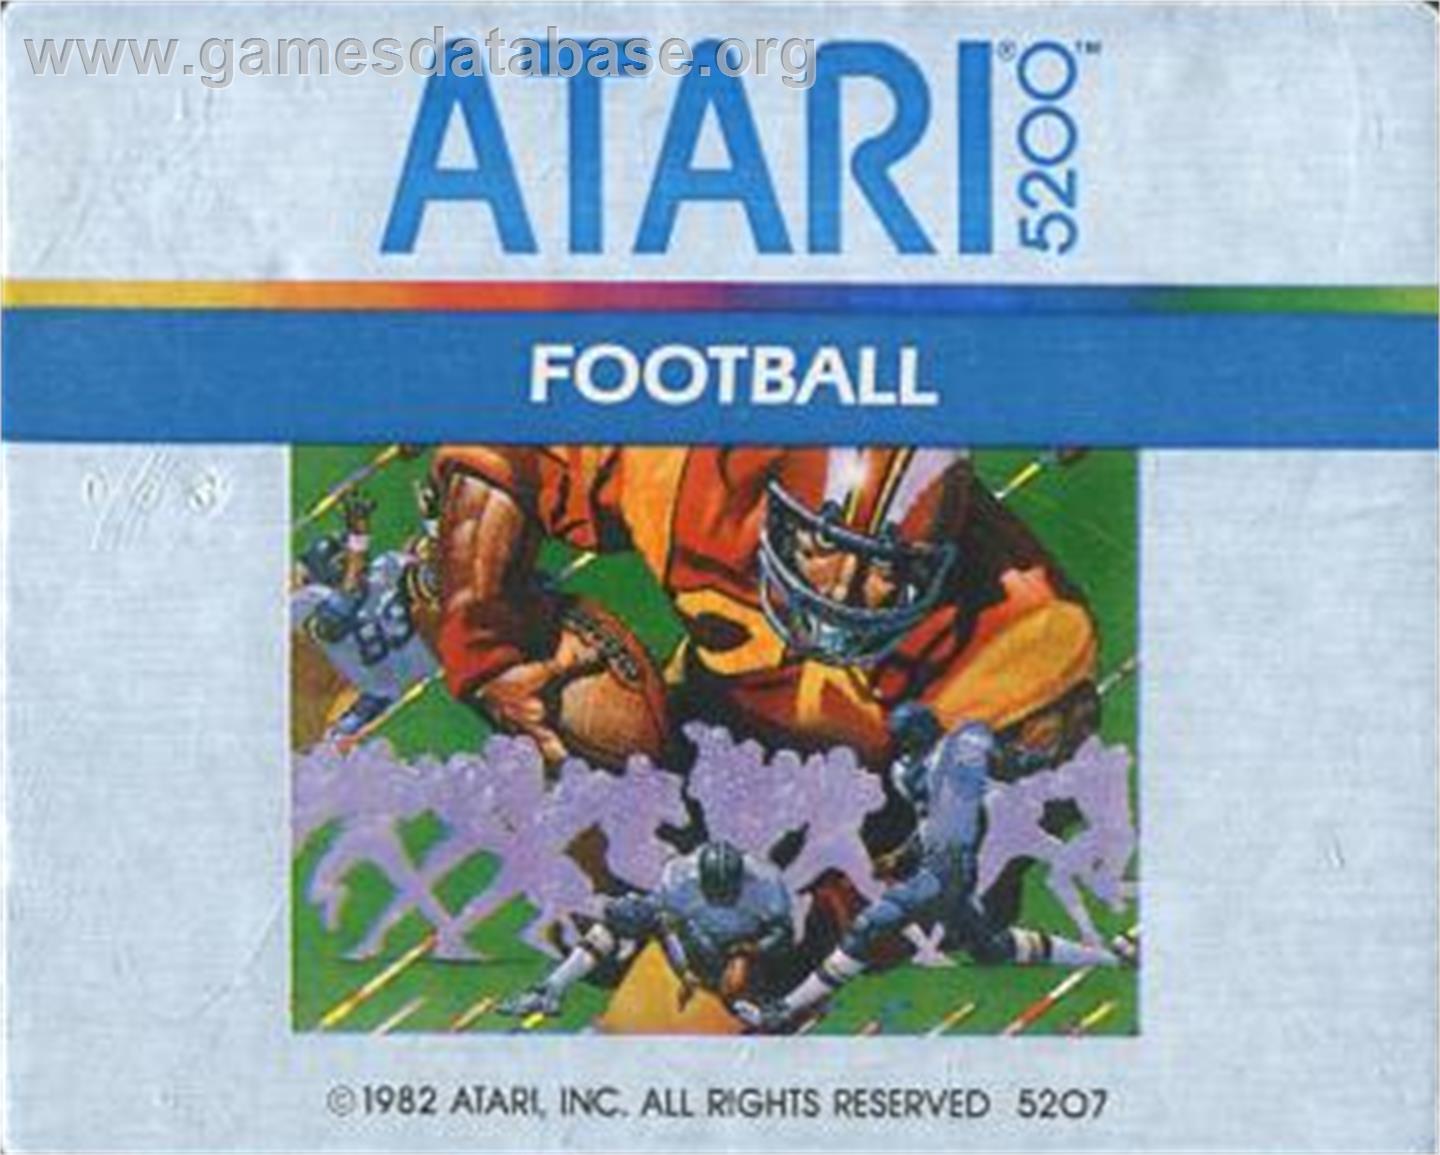 RealSports Football - Atari 5200 - Artwork - Cartridge Top